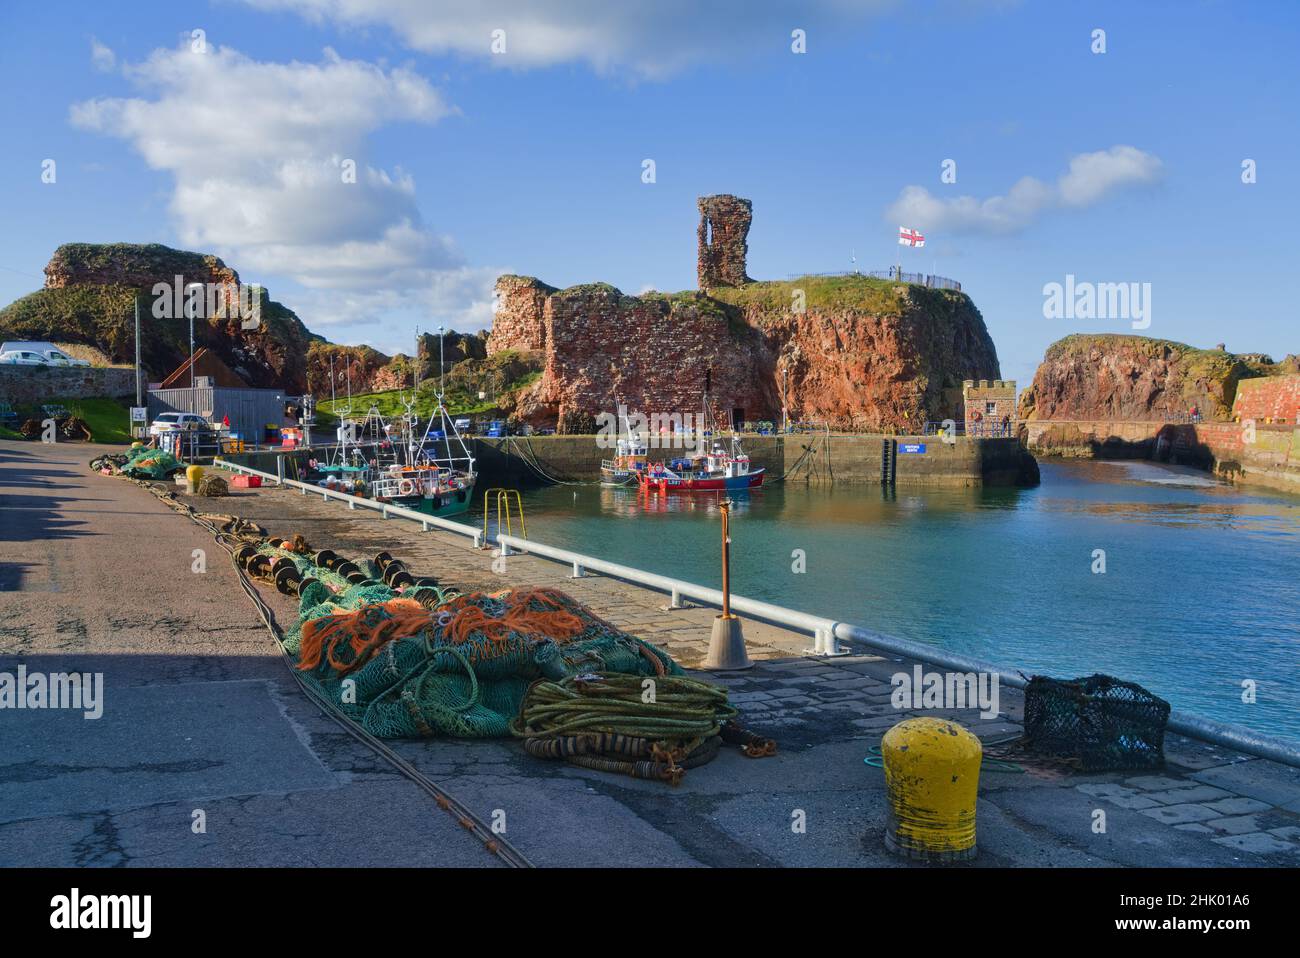 Vue vers l'ouest sur le port de Dunbar jusqu'aux ruines historiques du château.Belle journée claire.Bateaux de pêche colorés.East Lothian, Écosse, Royaume-Uni Banque D'Images